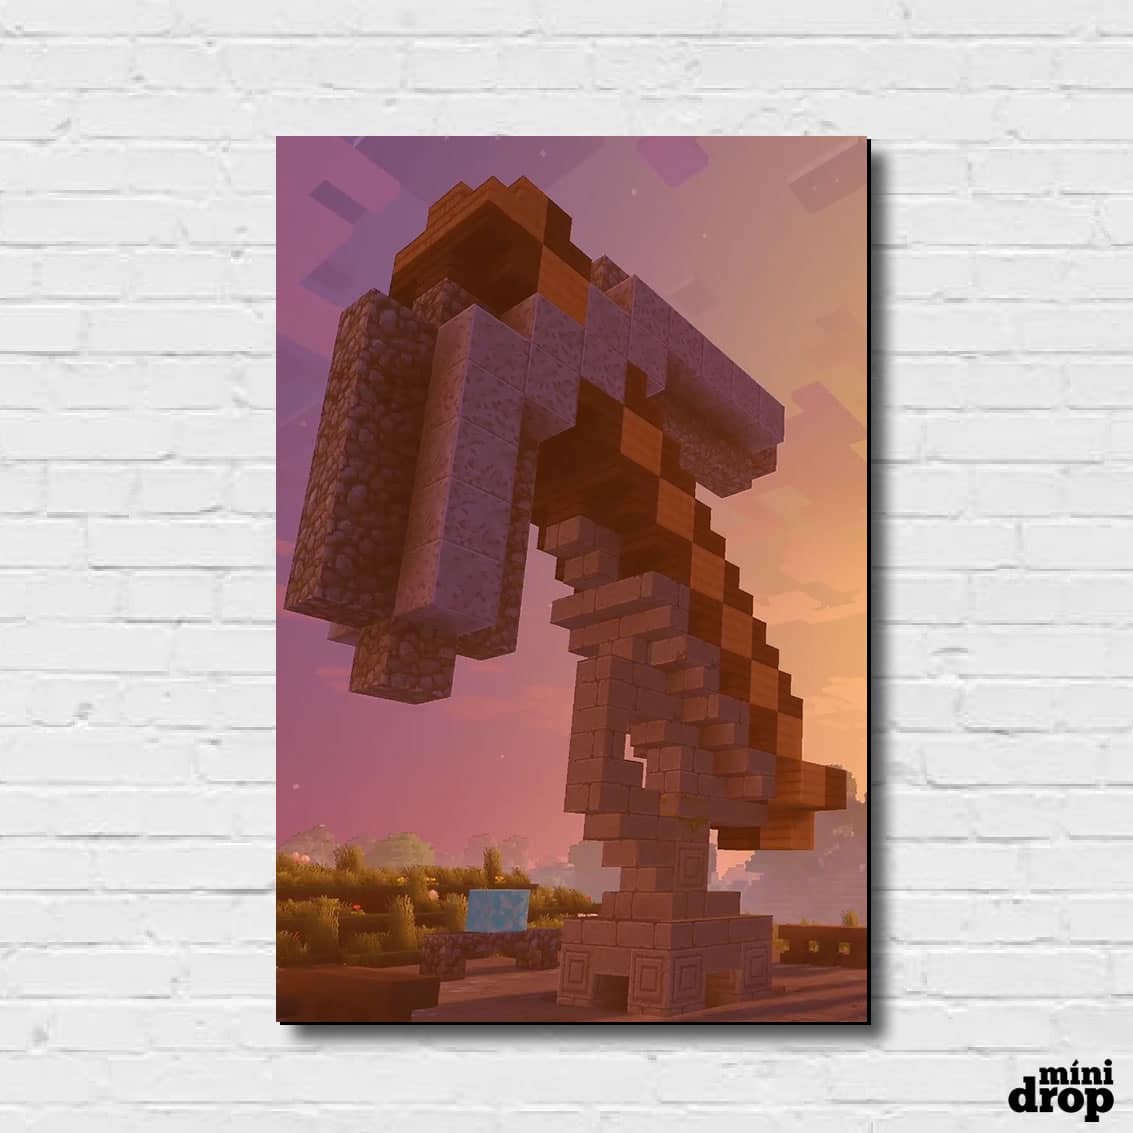 Placa Decorativa - Minecraft - Espada - Presentes de Jogos Colecionáveis